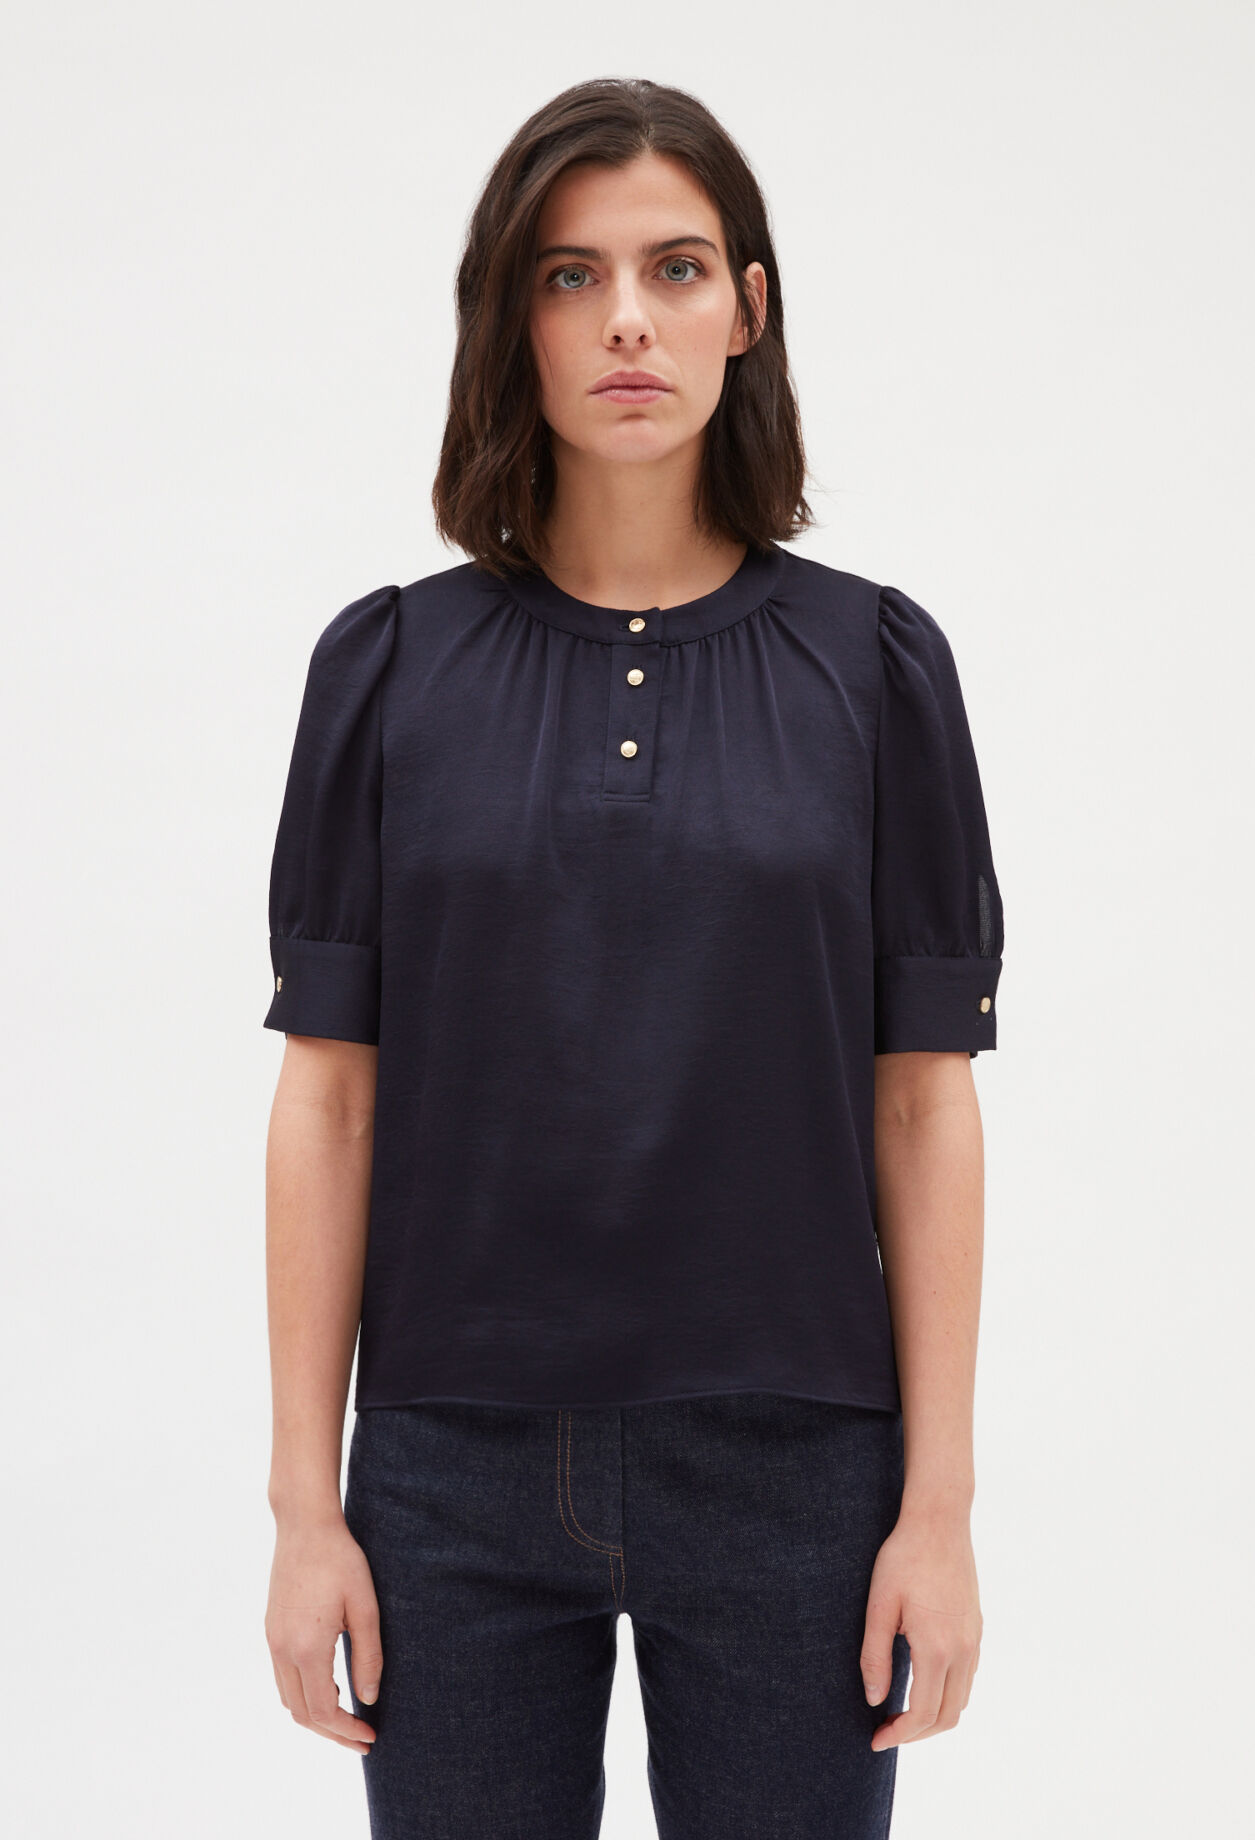 Navy blue short-sleeved blouse